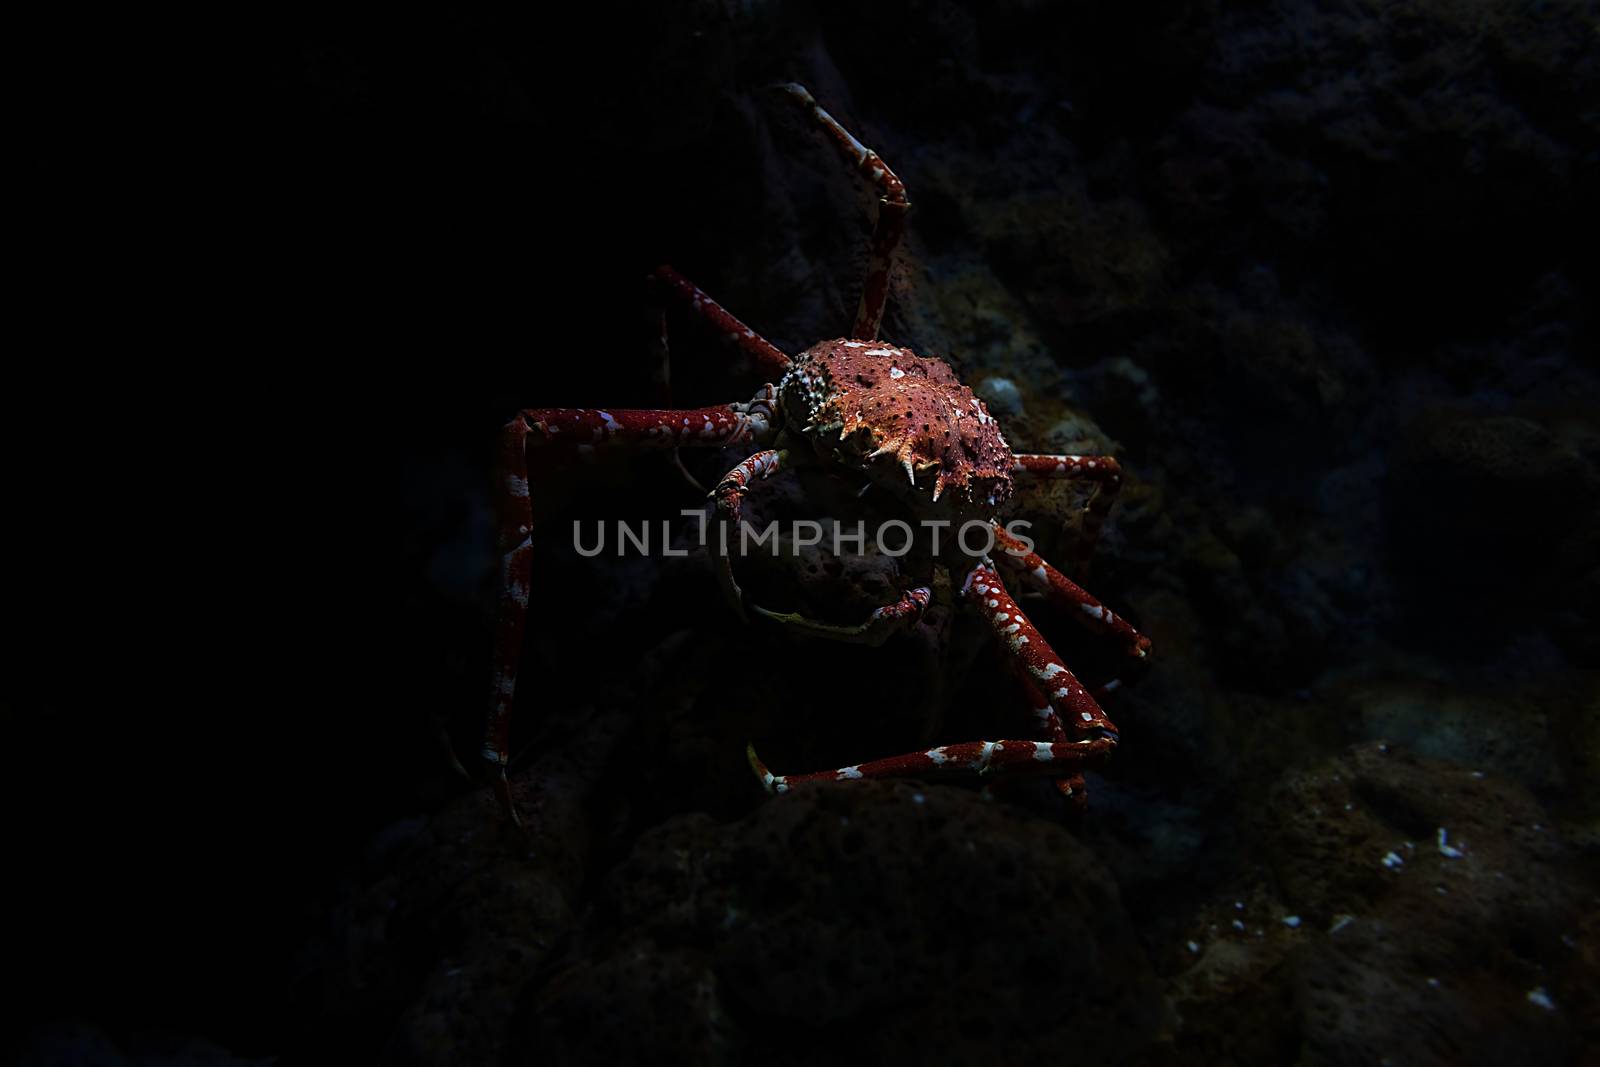 Giant Japanese spider crab in aquarium, Singapore